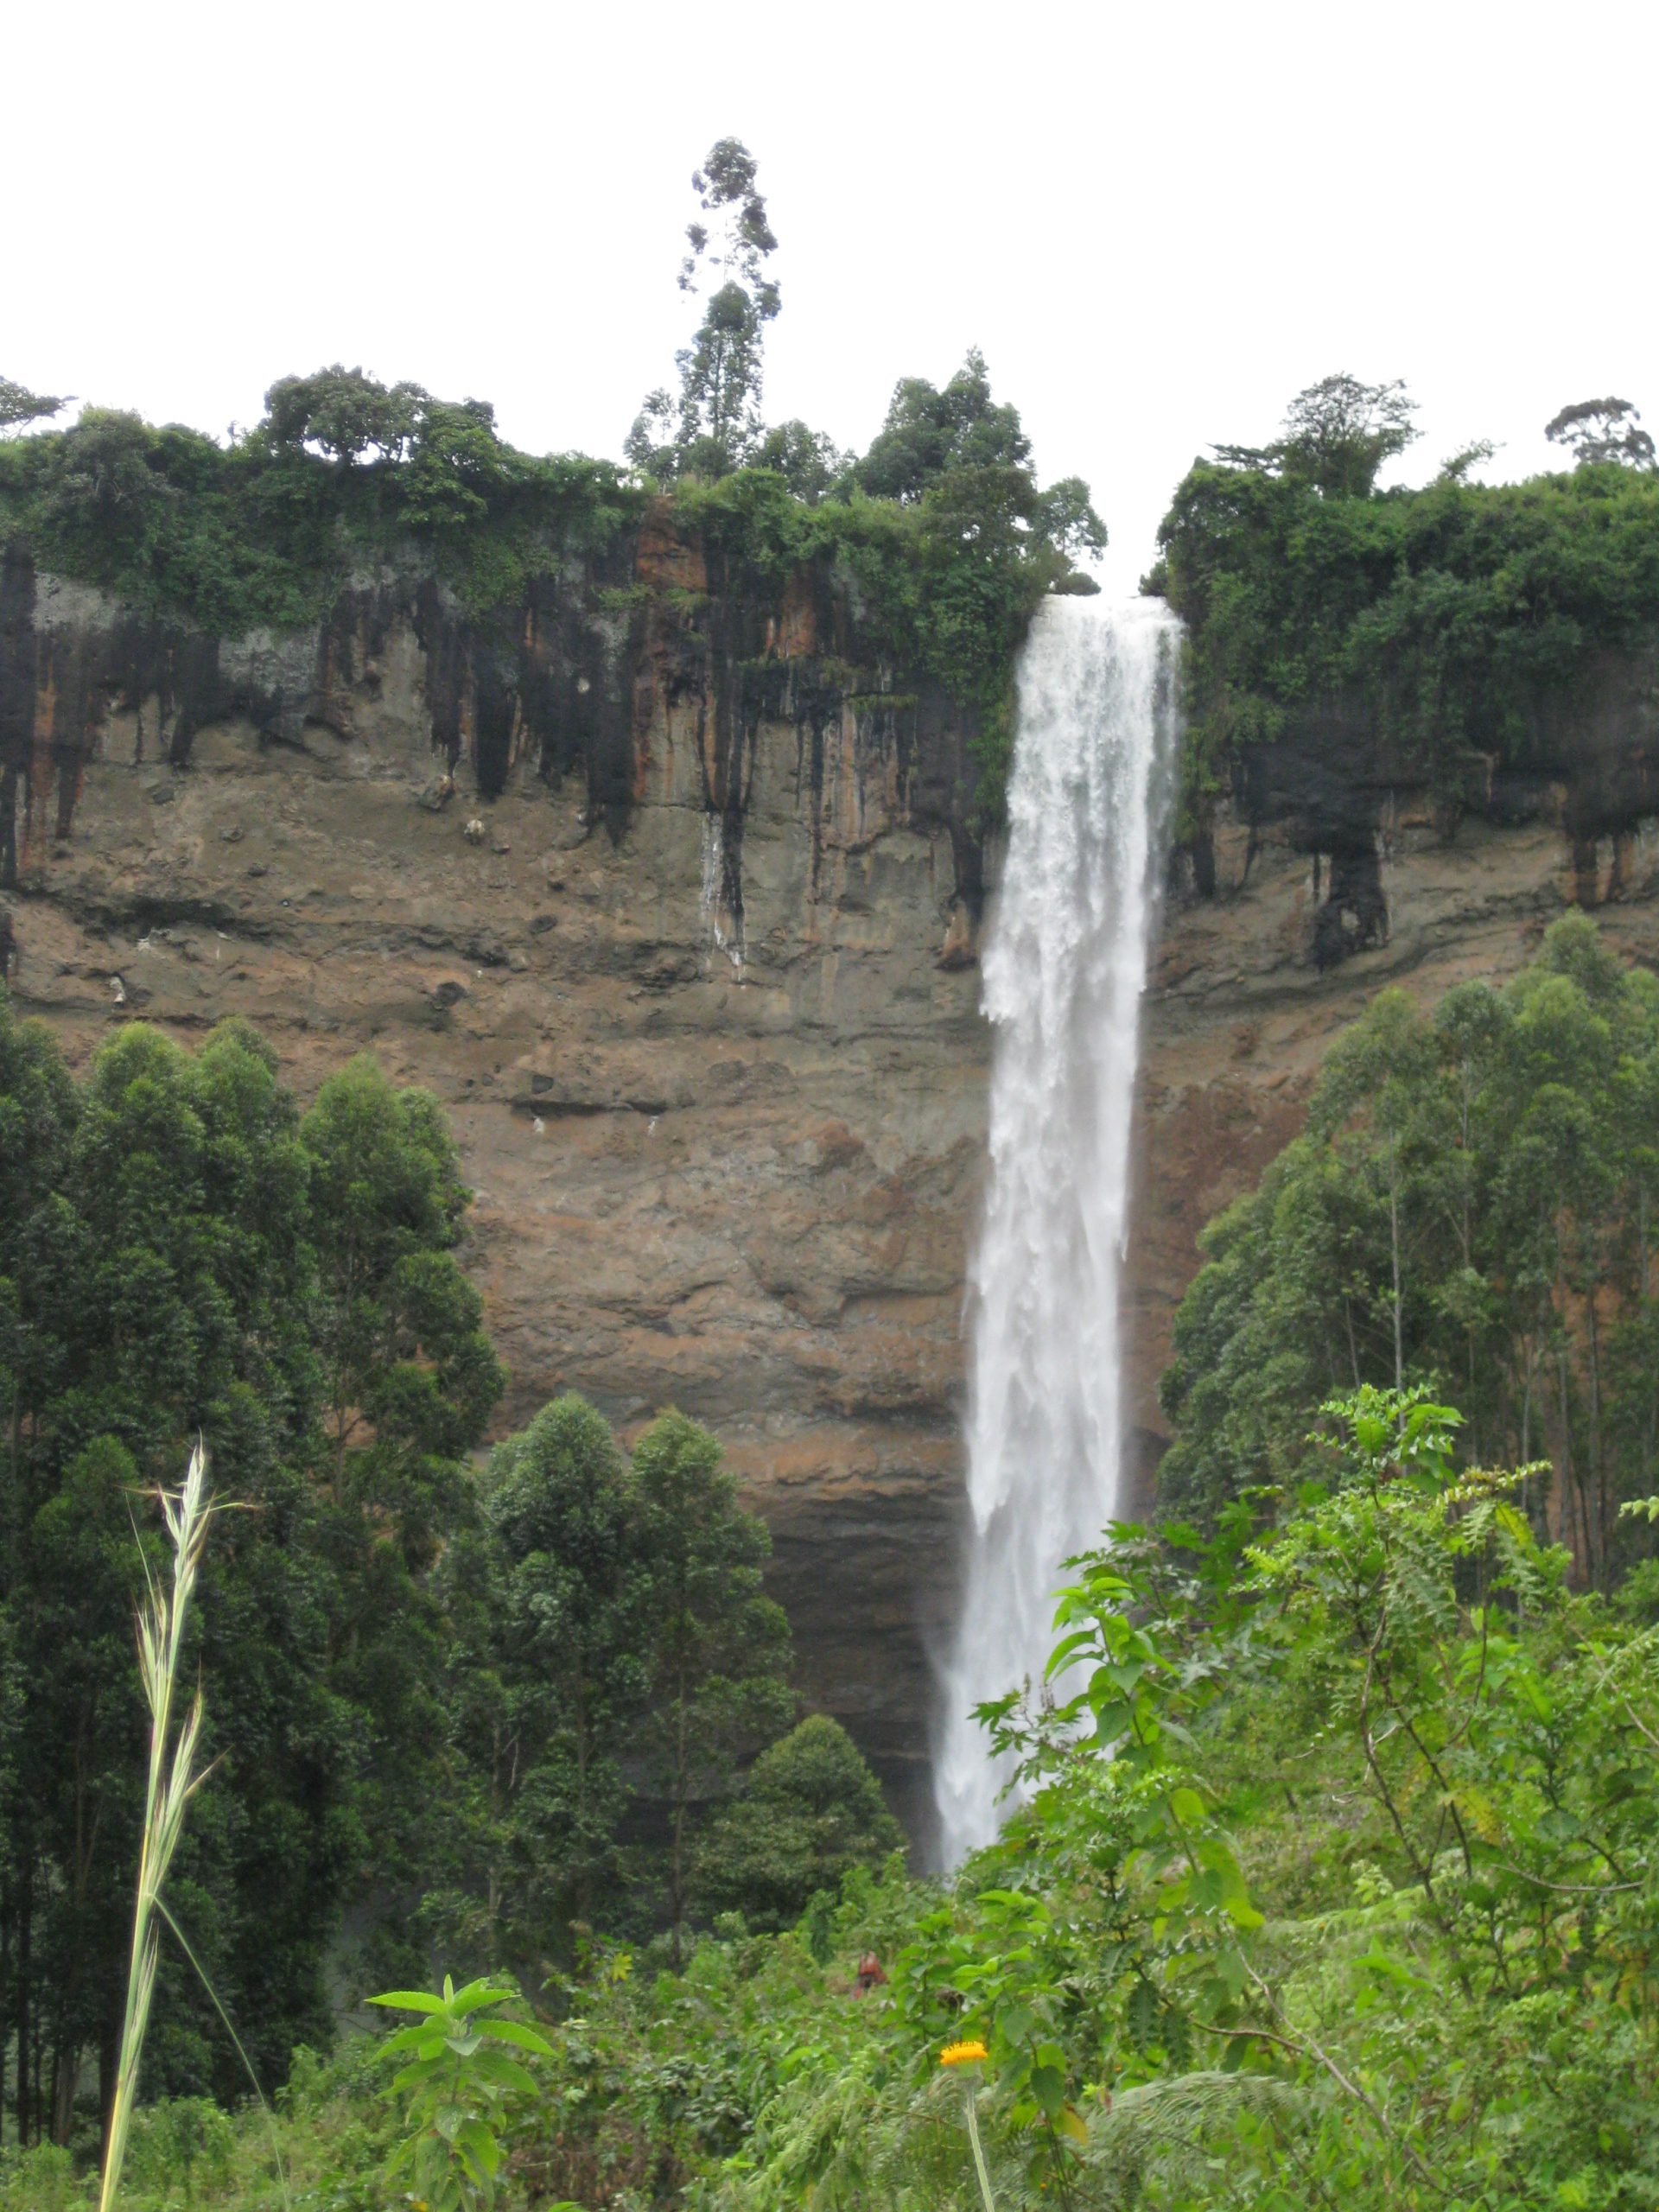  Sipi Falls, Uganda